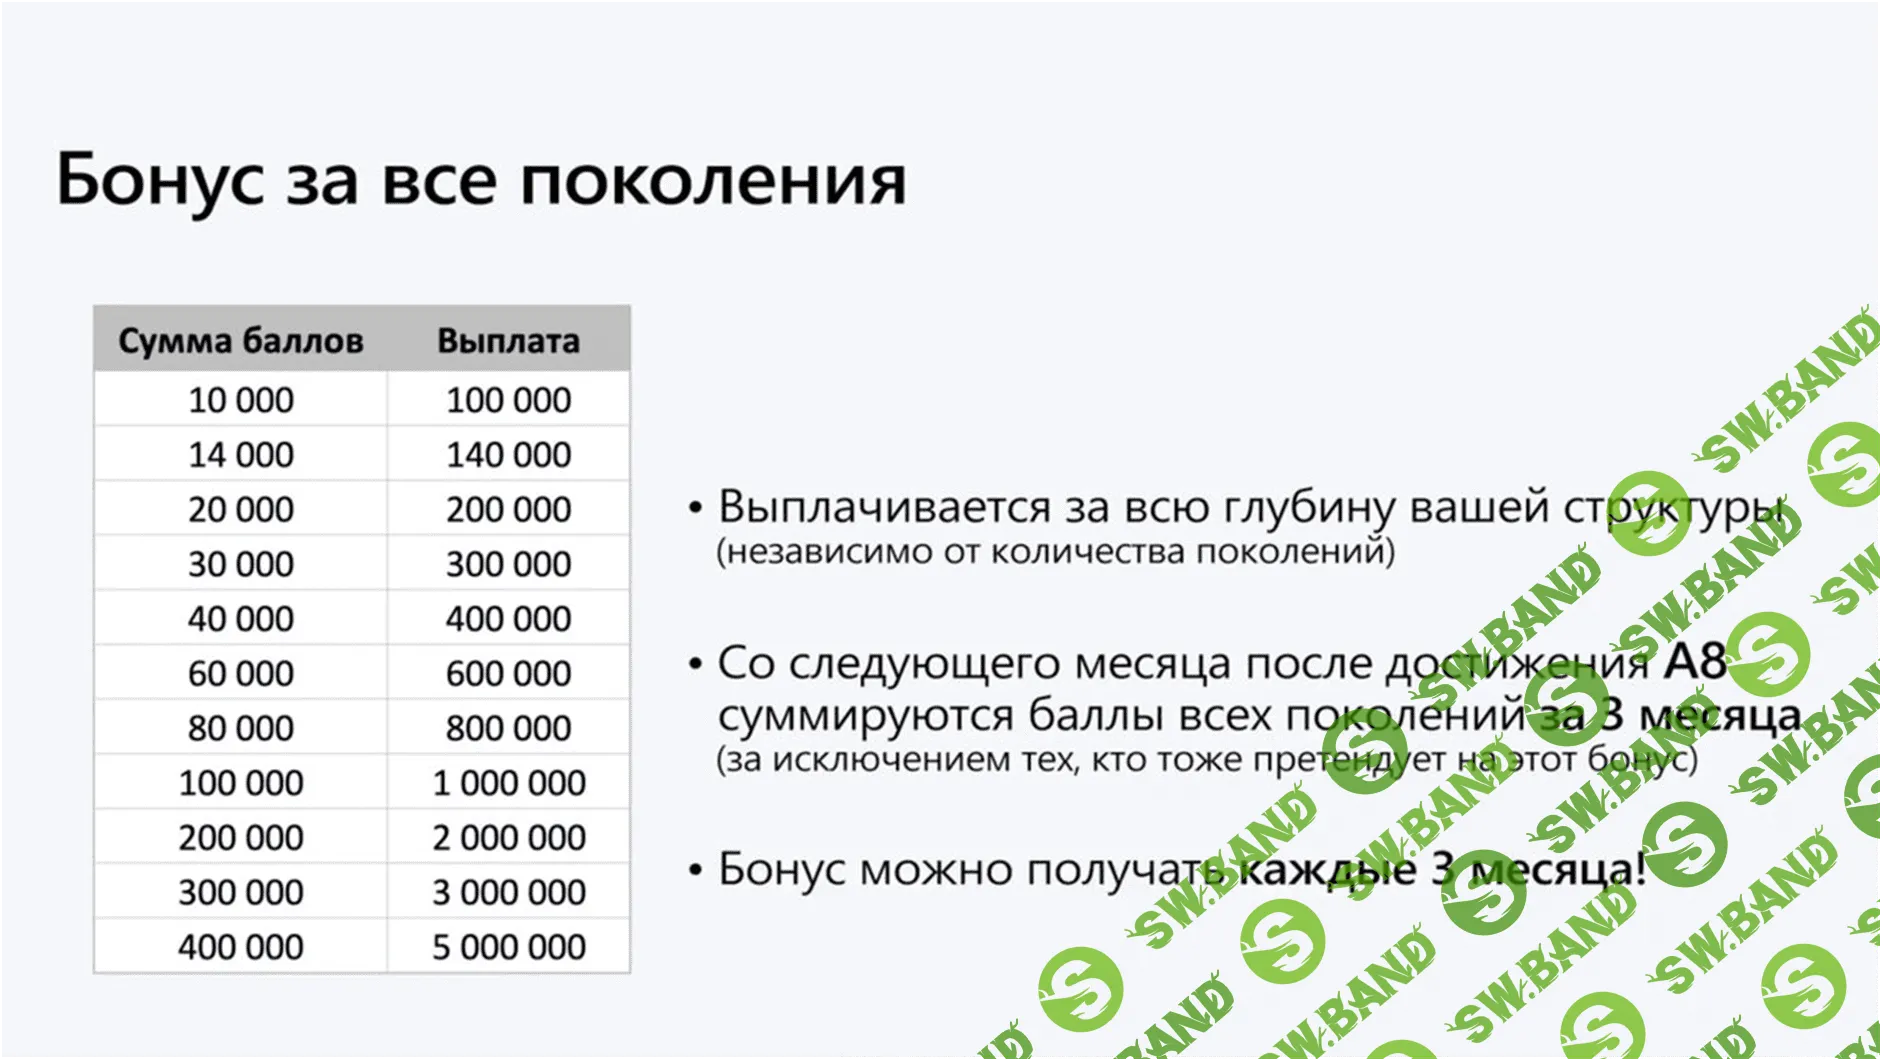 Свой в Альфе - первый MLM-проект от ТОП-3 Банка России (удаленная работа)